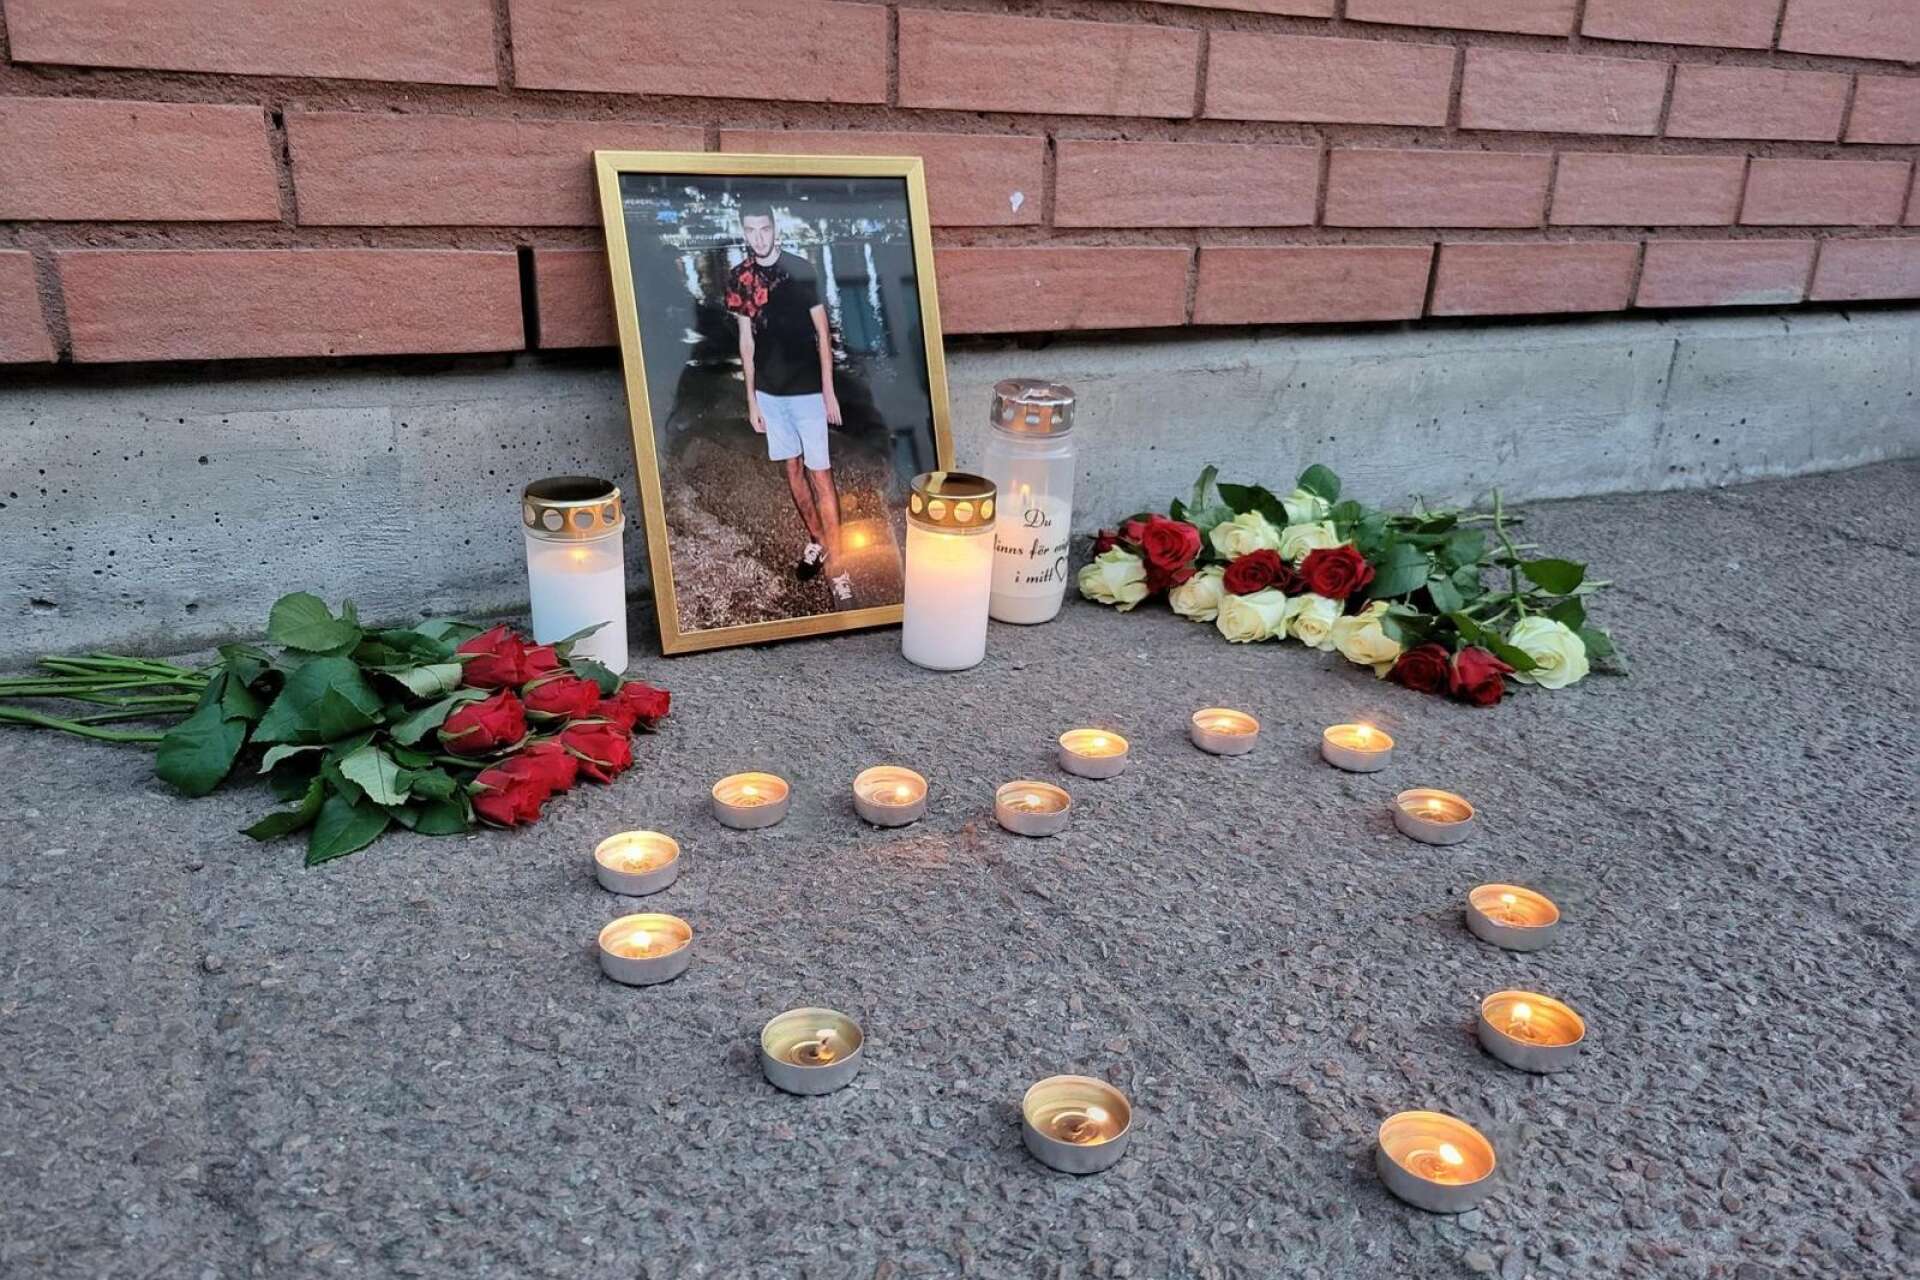 Lauren vänner har lagt blommor och tänt ljus på platsen där han misshandlades så svårt att han dog.